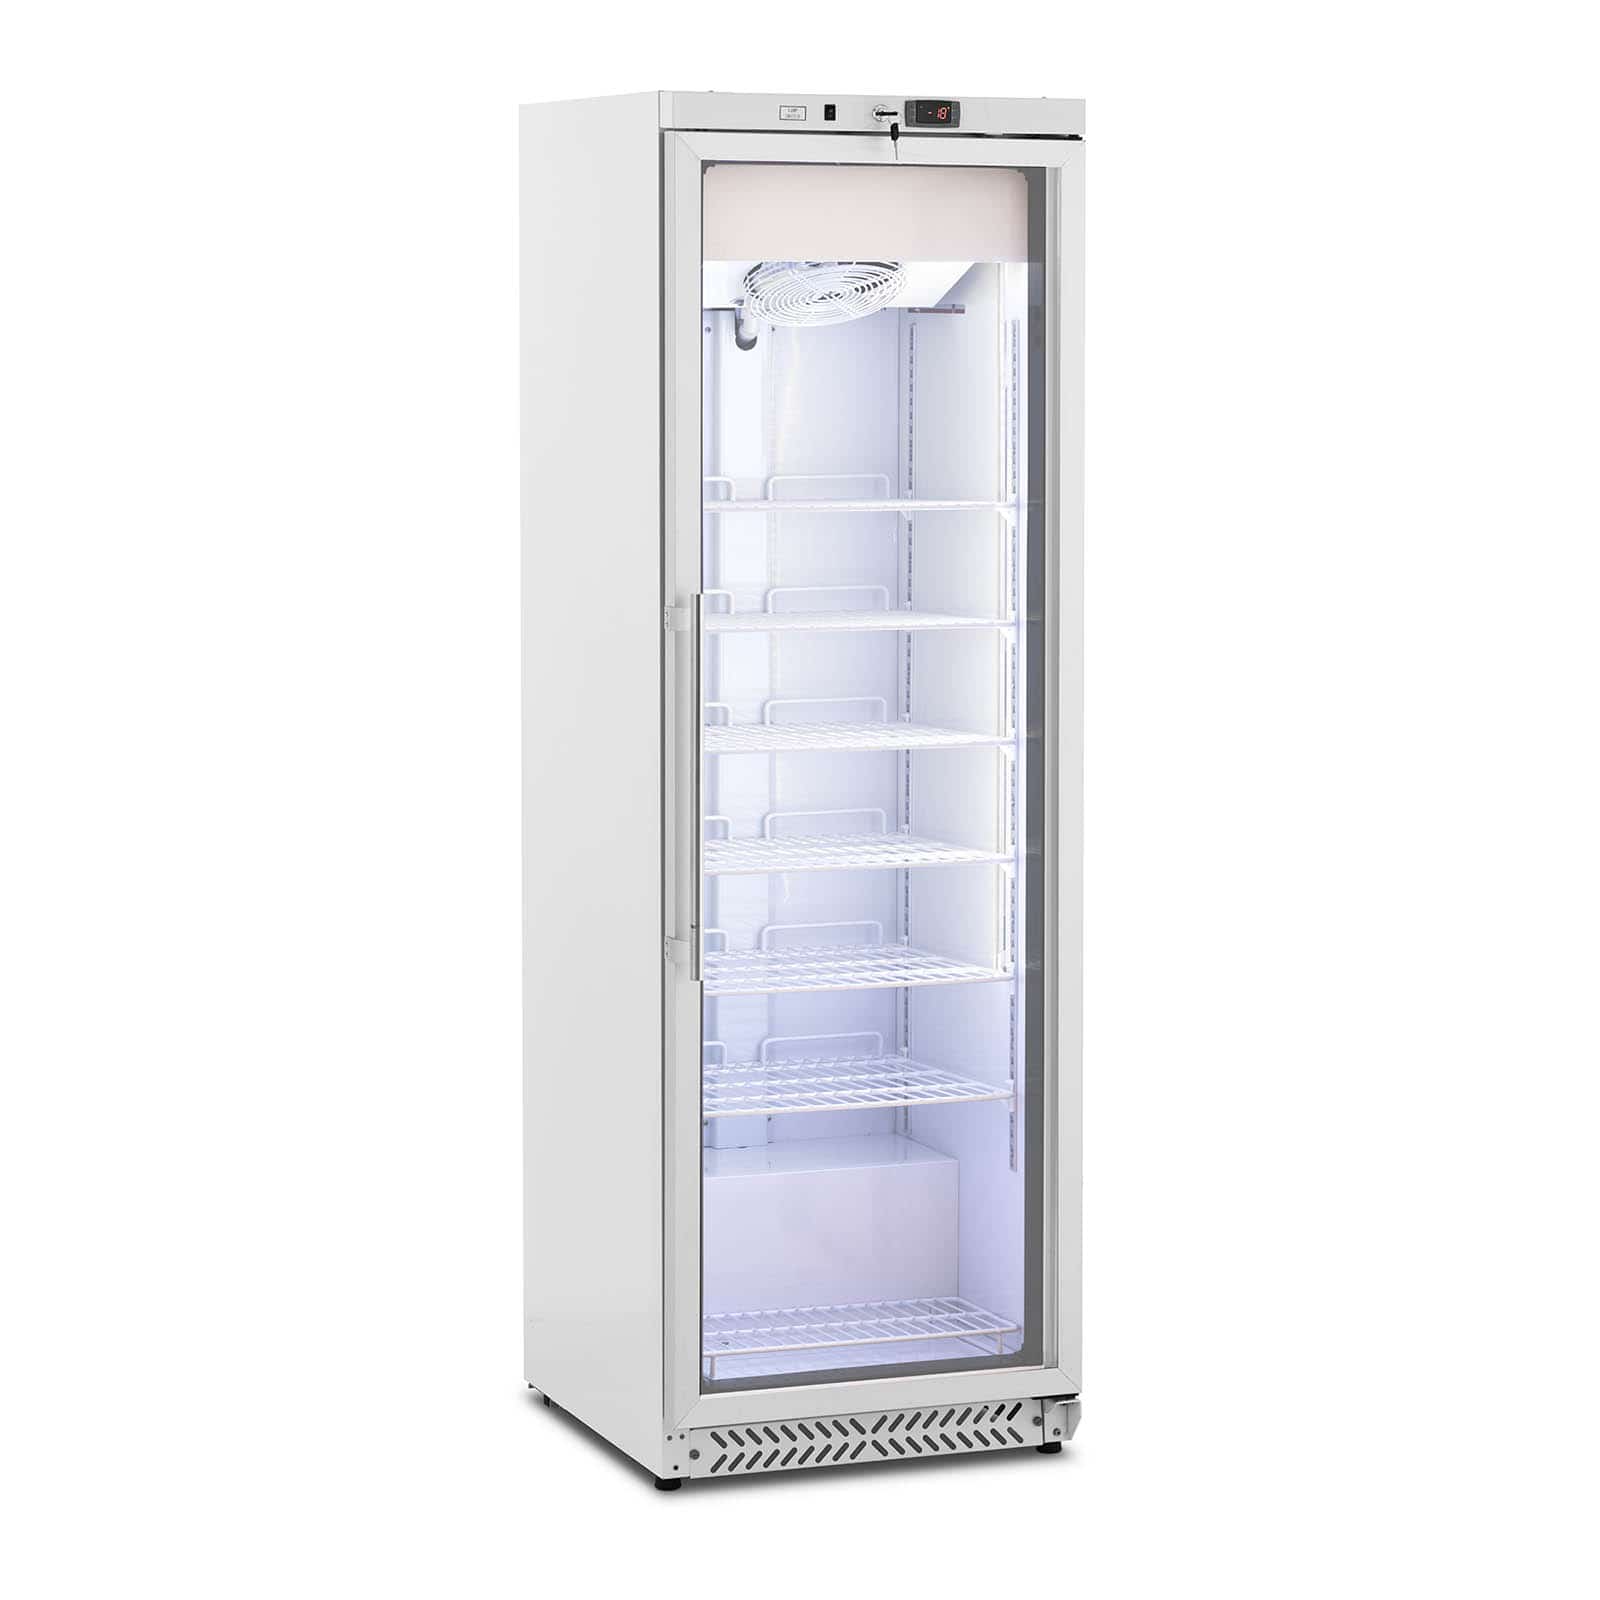 Grand congélateur armoire vertical grande capacité réfrigérant R290 (volume  : 380 litres, puissance : 425 watts, porte à double vitrage)